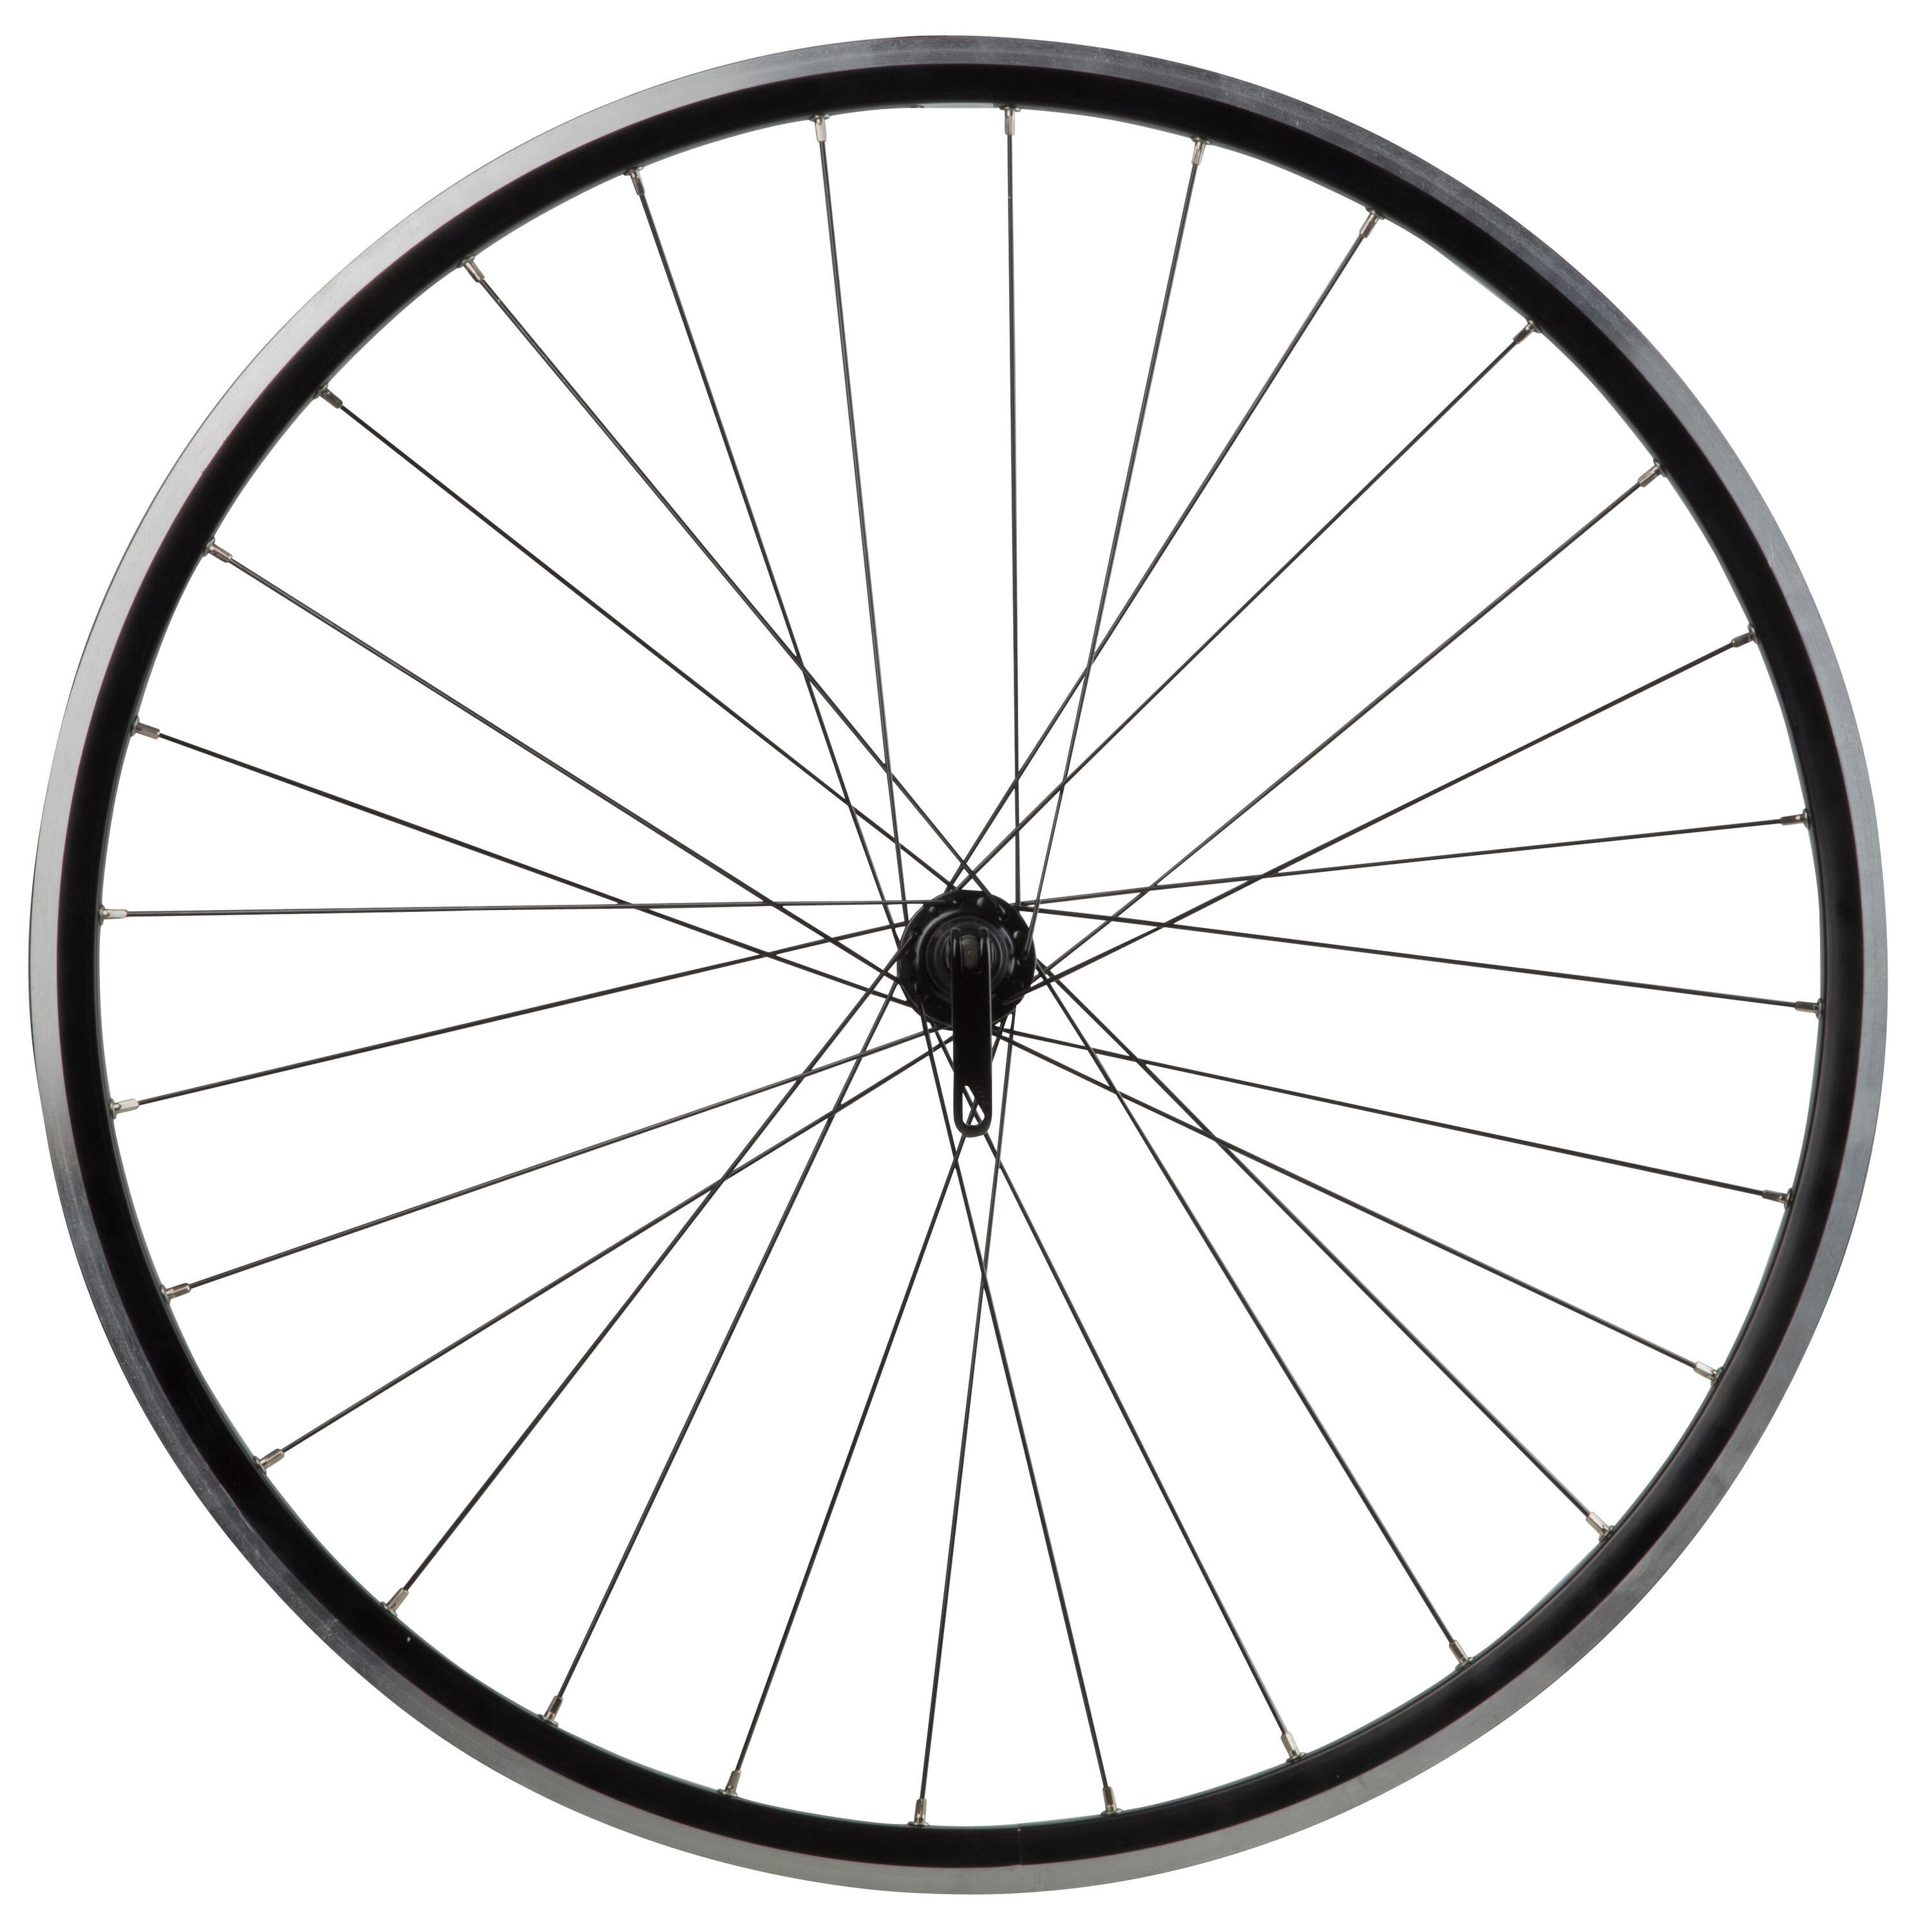 Колесо для шоссейного велосипеда переднее с двойной перегородкой черное 700 Triban колесо для велосипеда двойной обод 26 переднее под эксцентрик